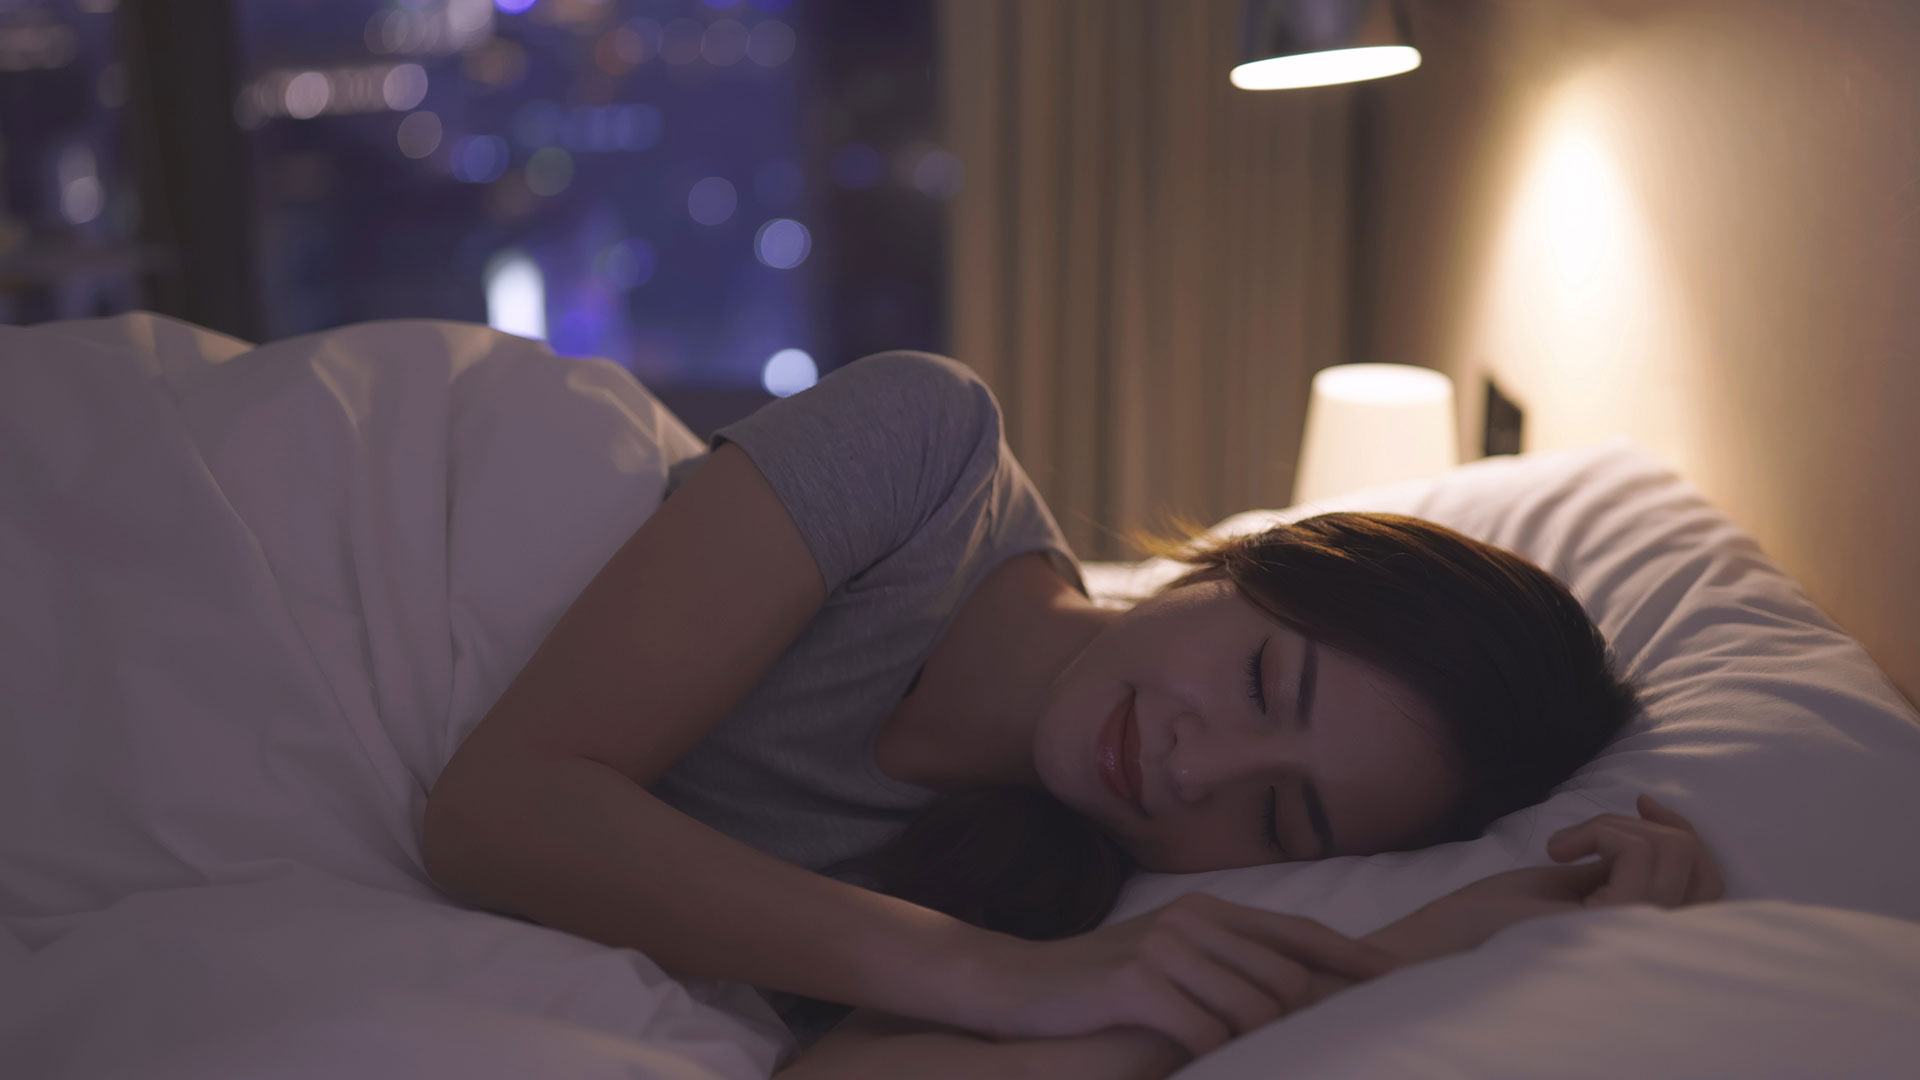 La postura a la hora de dormir puede generar efectos positivos tanto en el cerebro como en la prevención de enfermedades
(Getty Images)